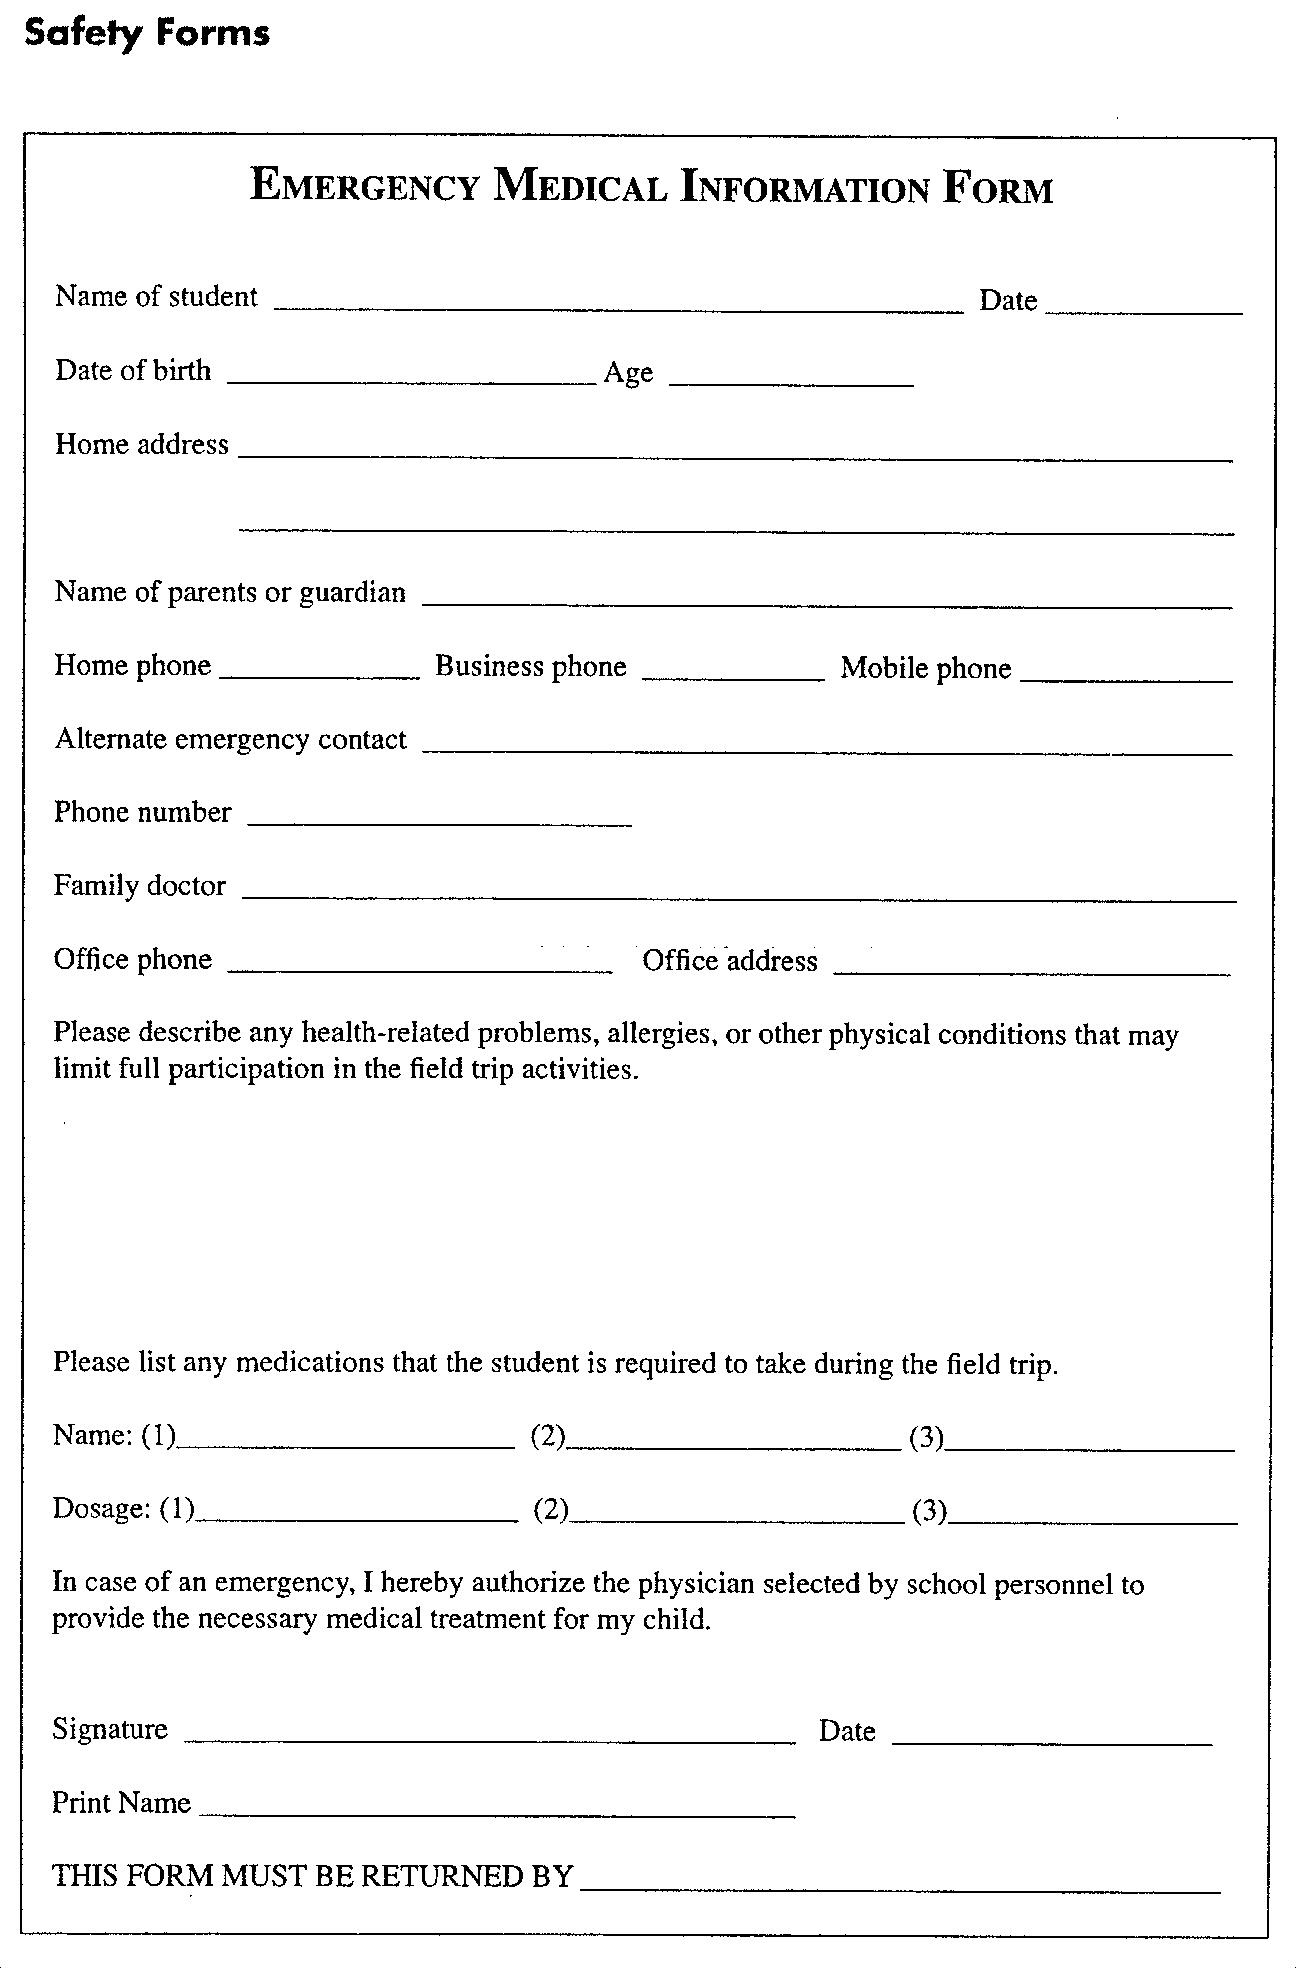 printable-emergency-medical-information-form